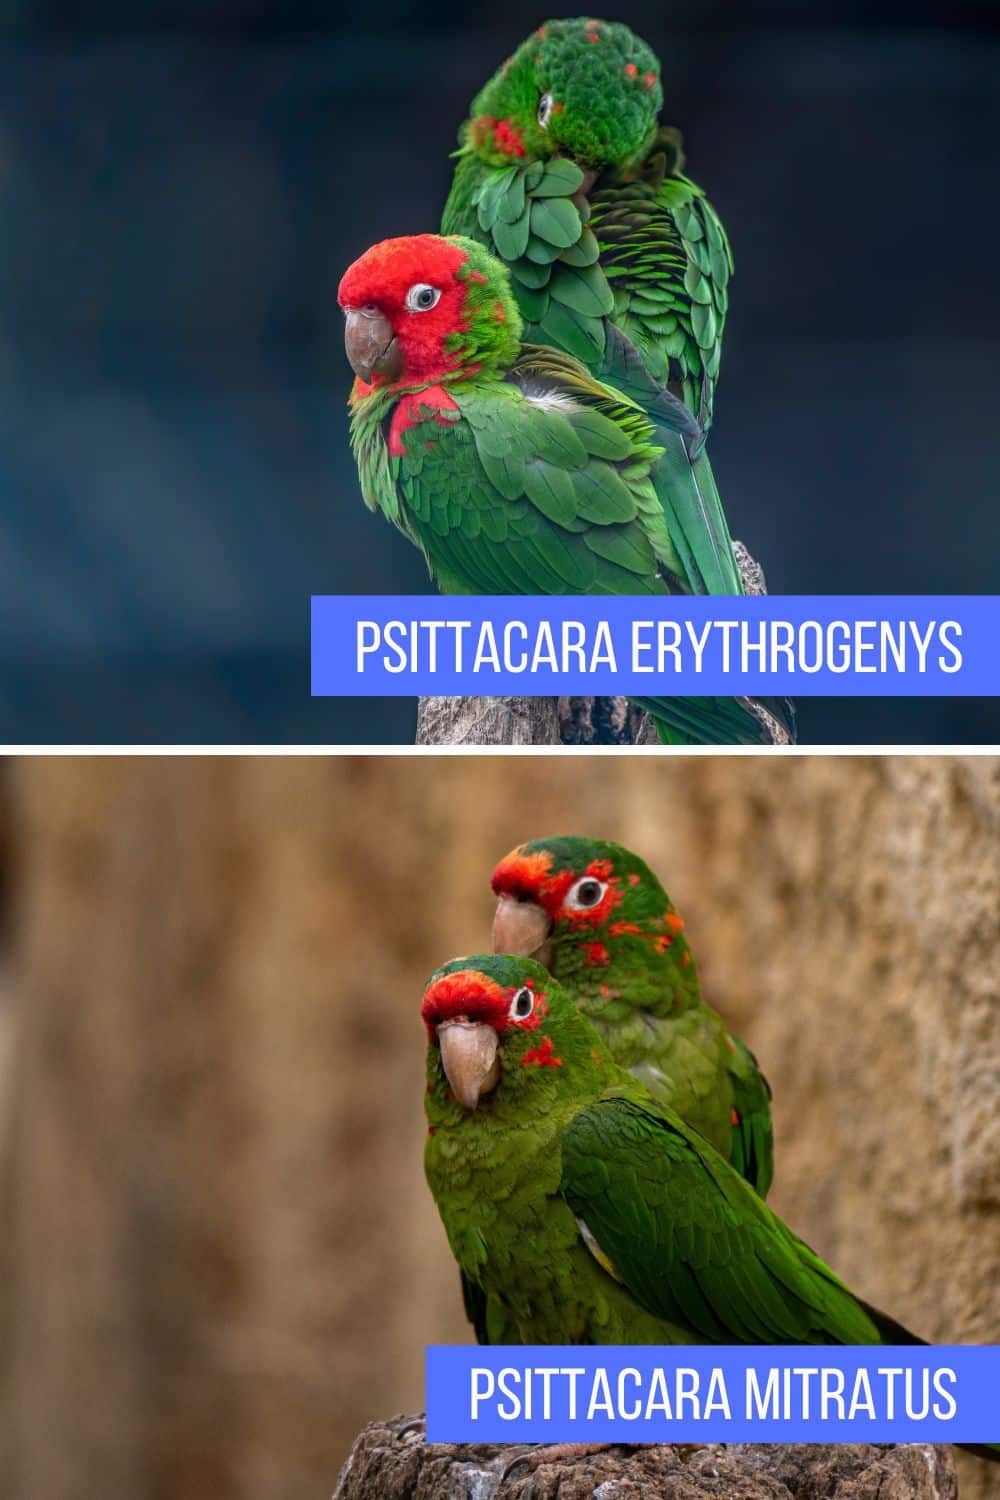 Comparación entre Psittacara erythrogenys y Psittacara mitratus, dos tipos de loros sudamericanos